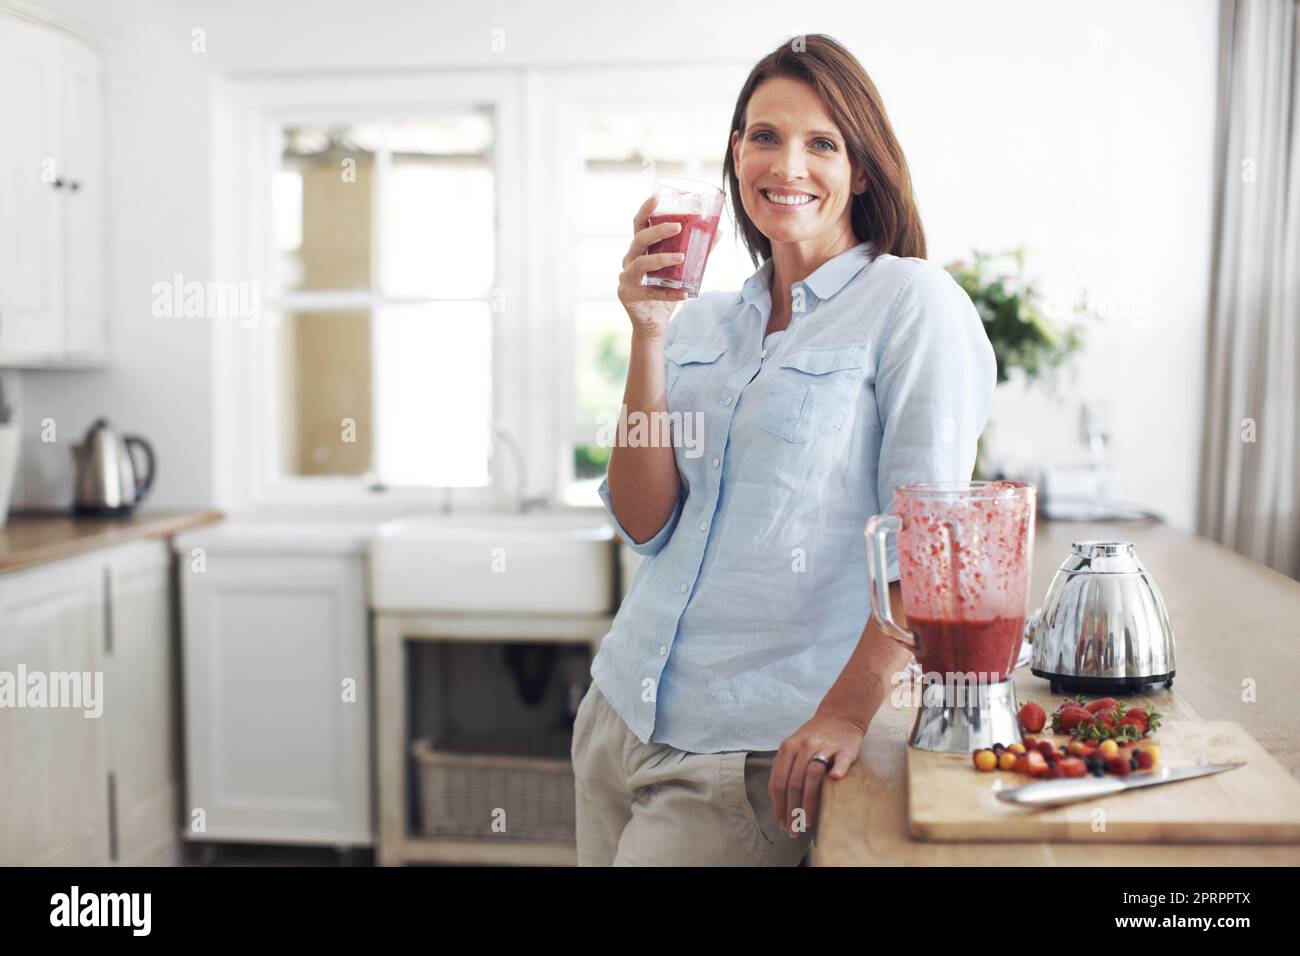 Herrlich fruchtiges Getränk. Eine attraktive Brünette genießt einen Fruchtcoothie, während sie sich an einer Küchentheke lehnt. Stockfoto